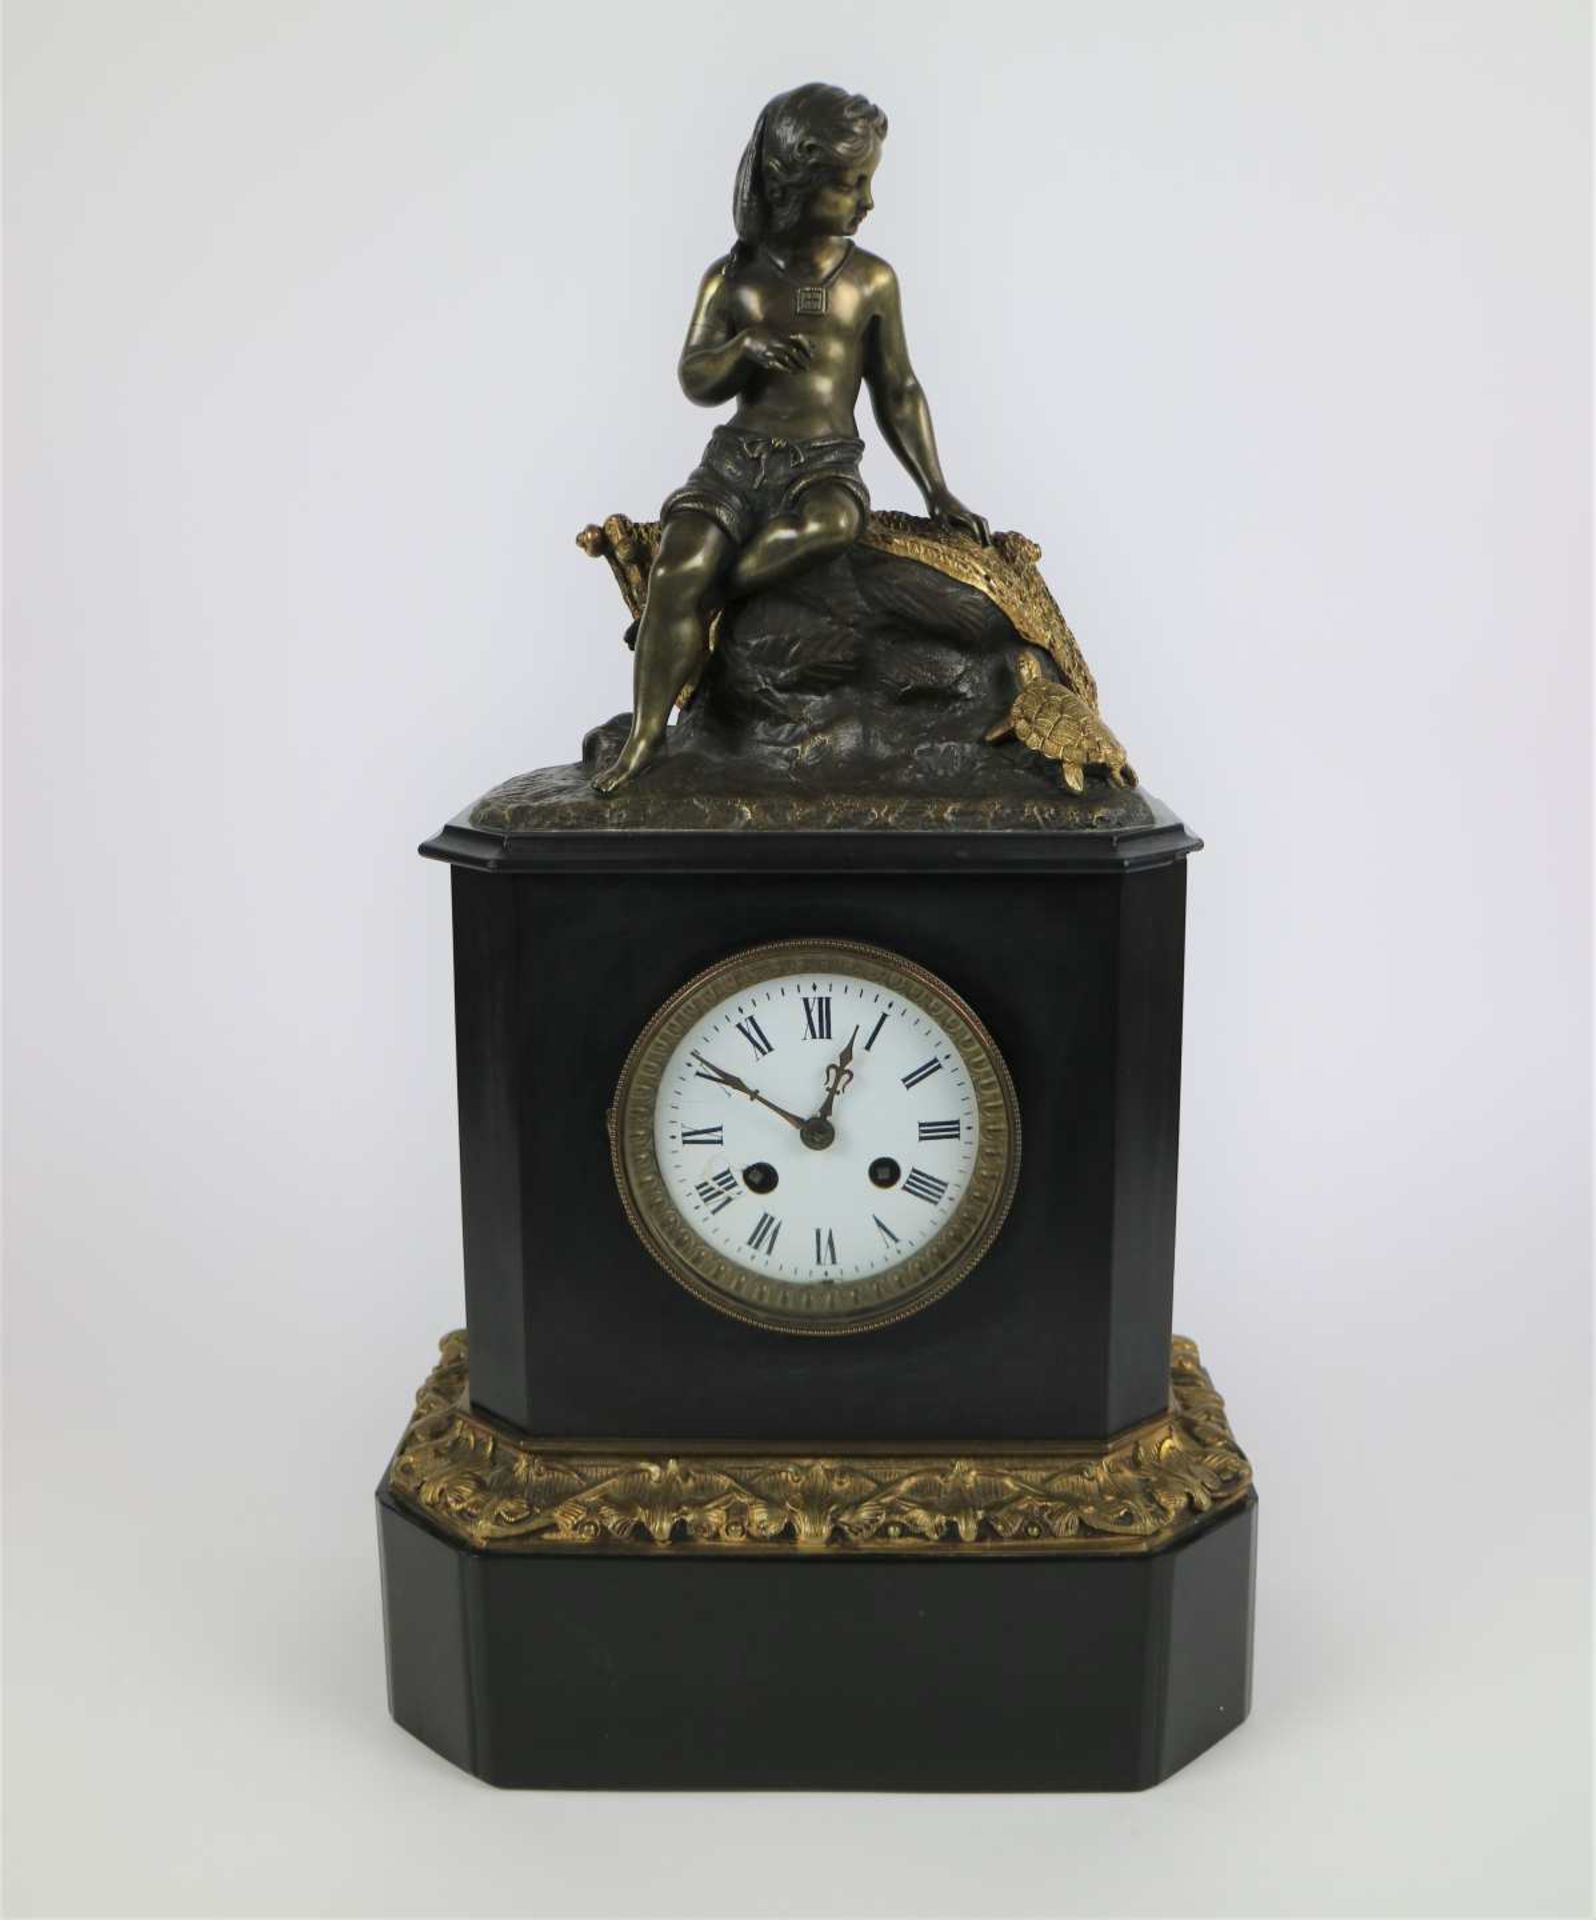 Napoleon clock